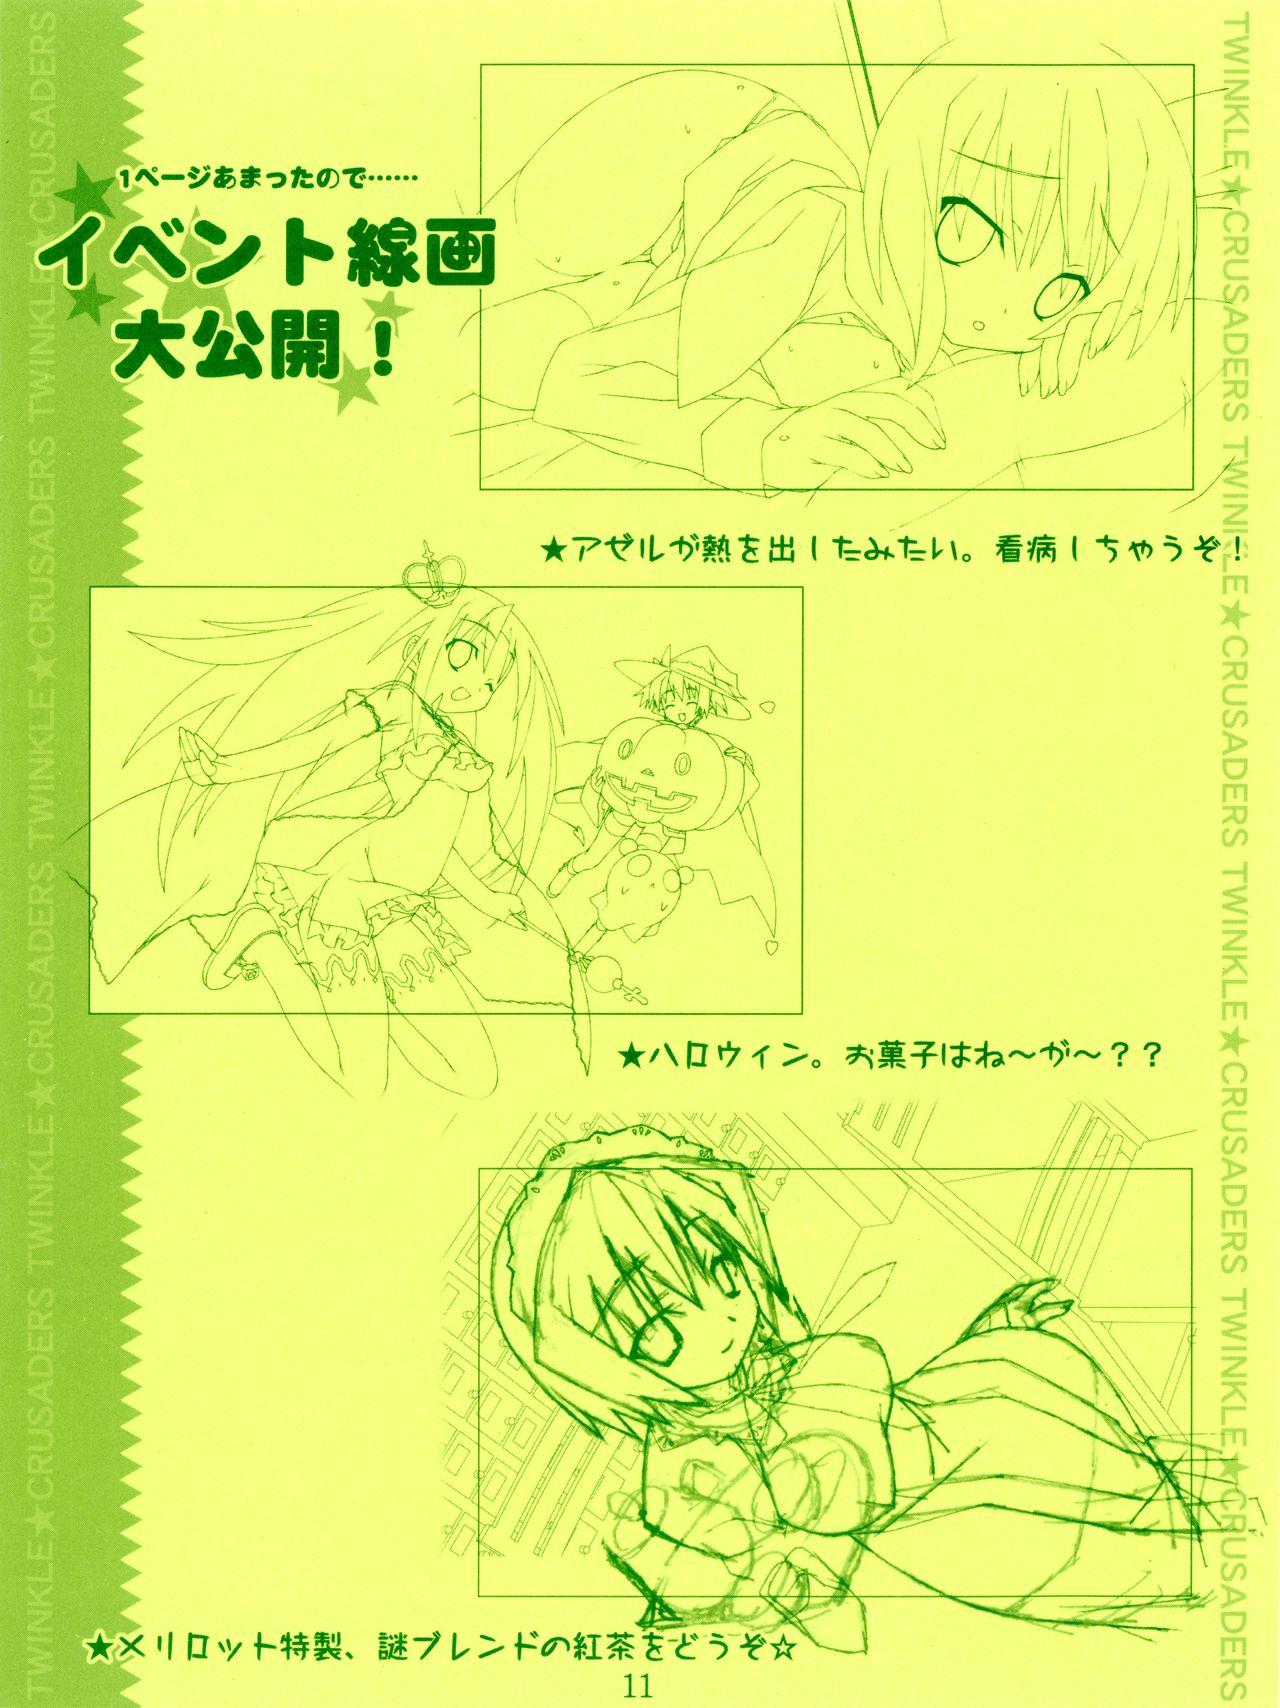 Cei Twinkle☆Crusaders Kurukuru Secret Booklet - Twinkle crusaders Hot Women Having Sex - Page 11